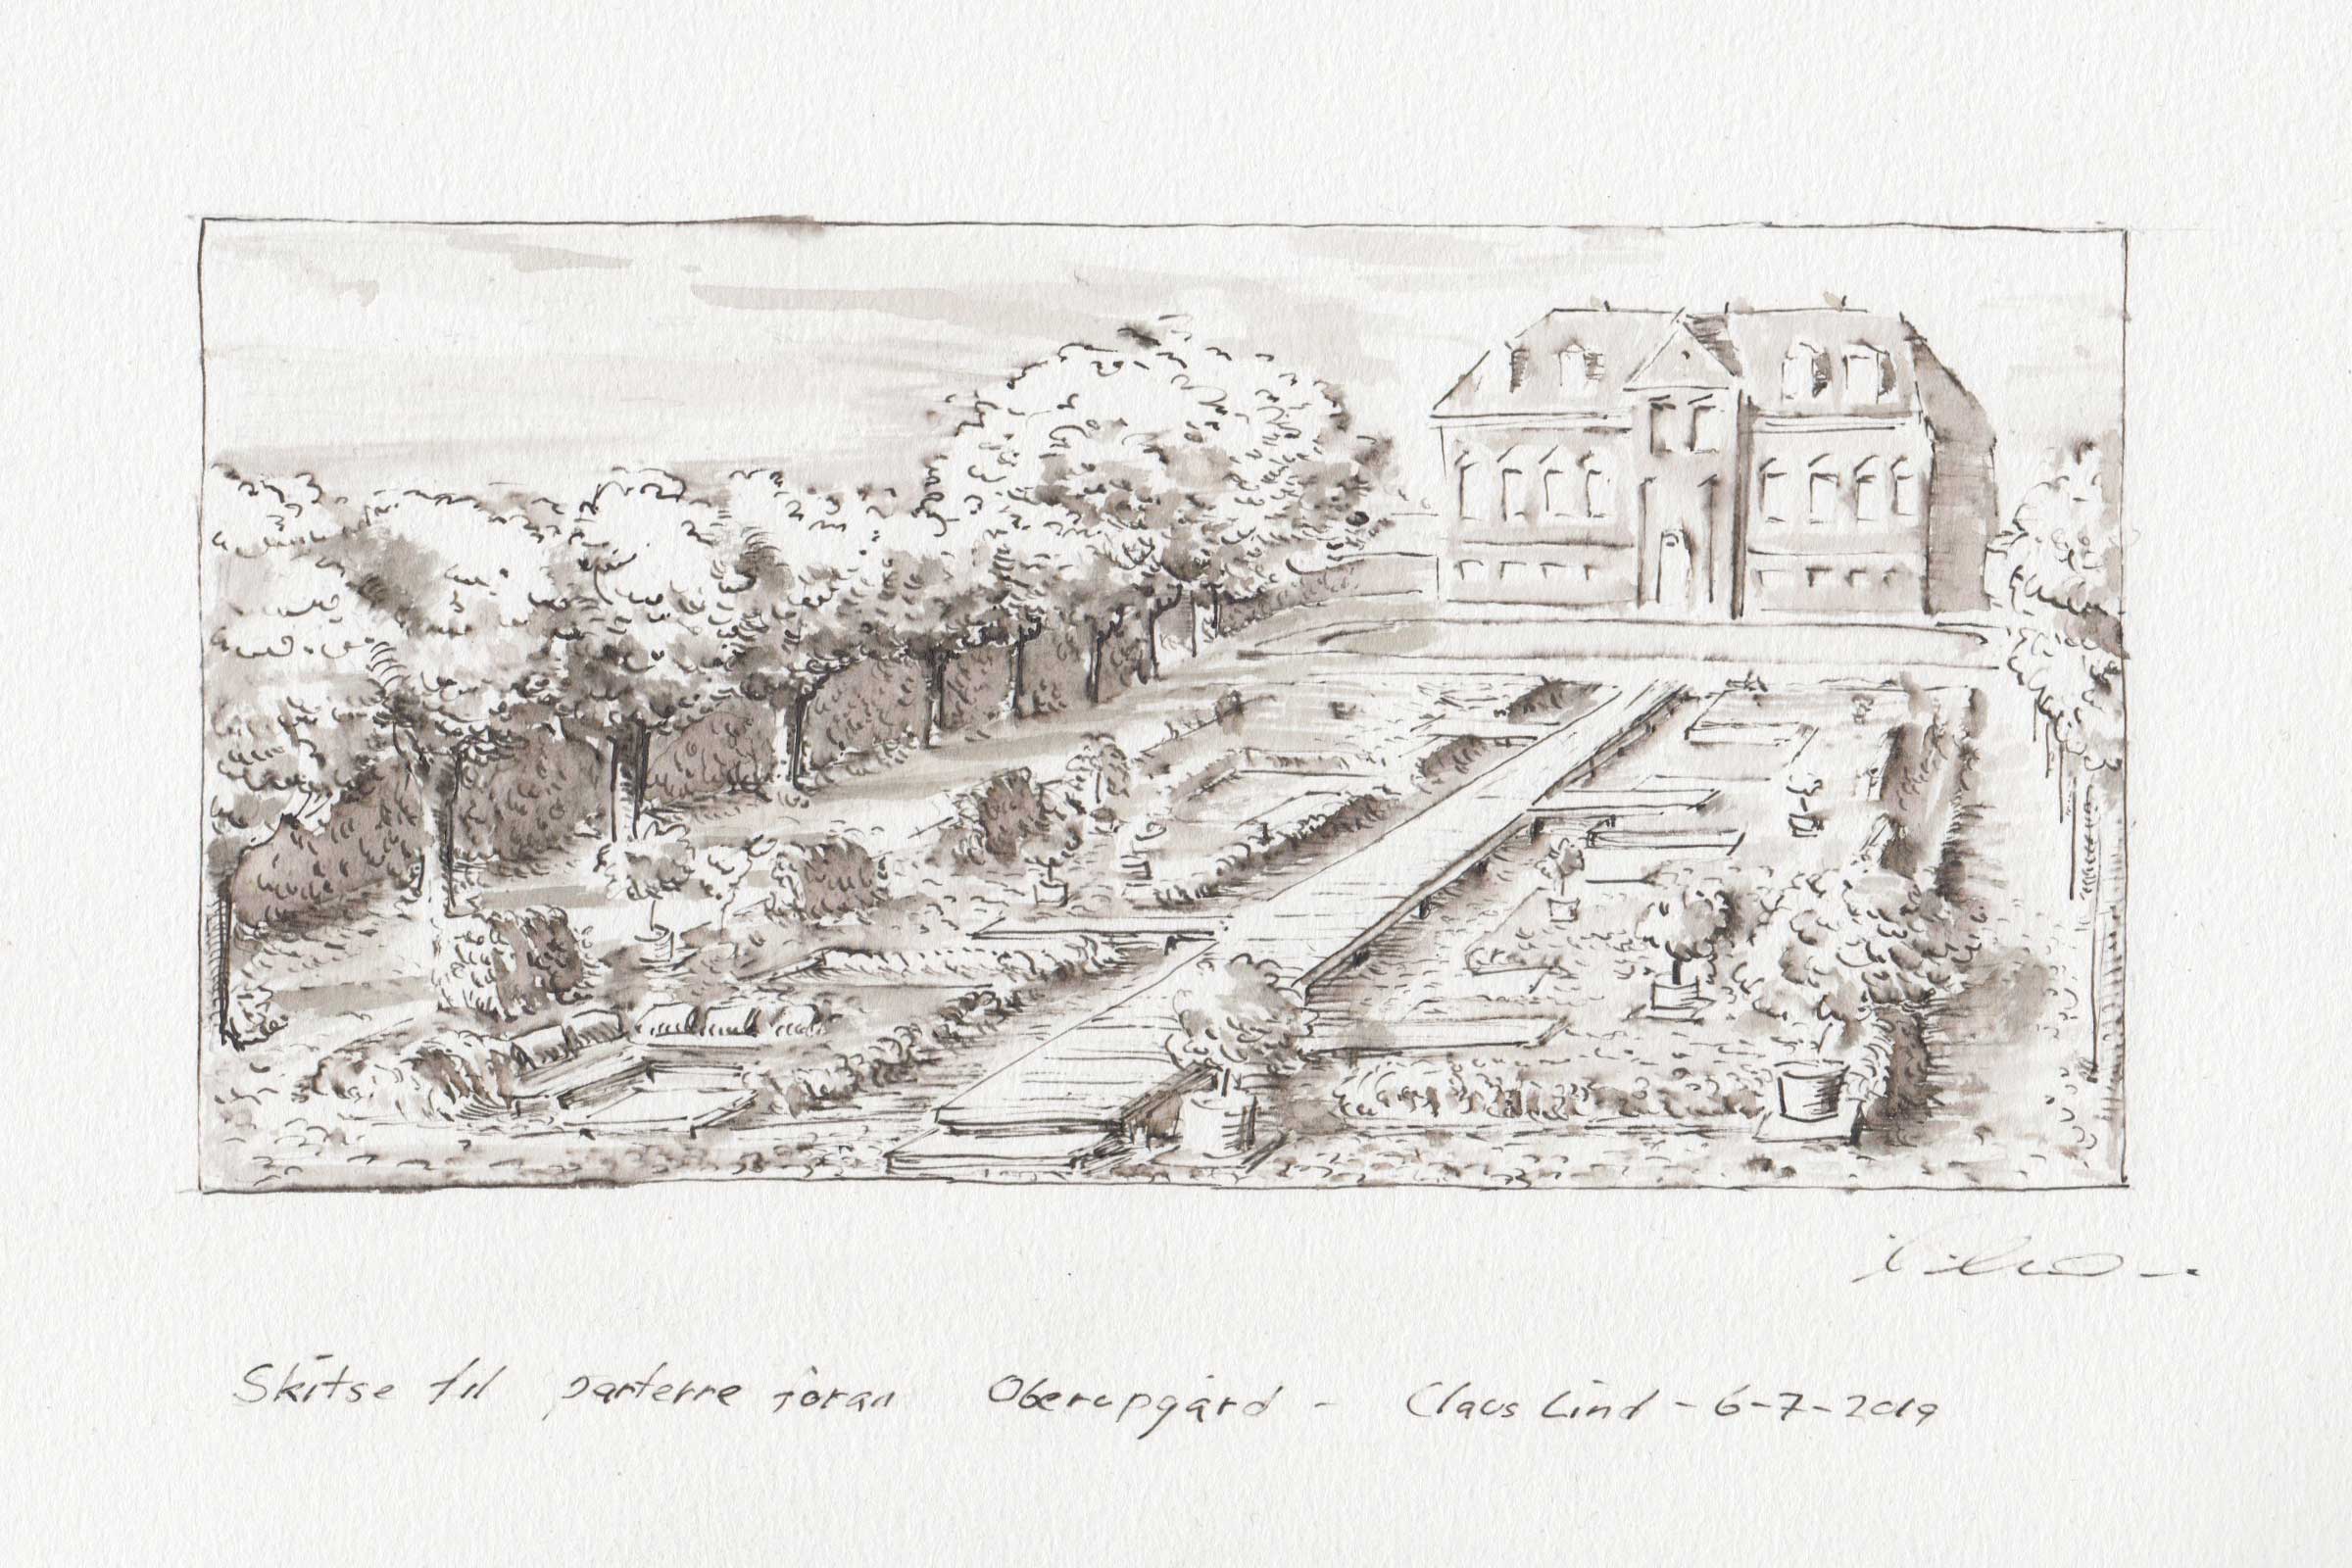 claus lind © manor park architecture sketches ivy bridge oberupgaard garden